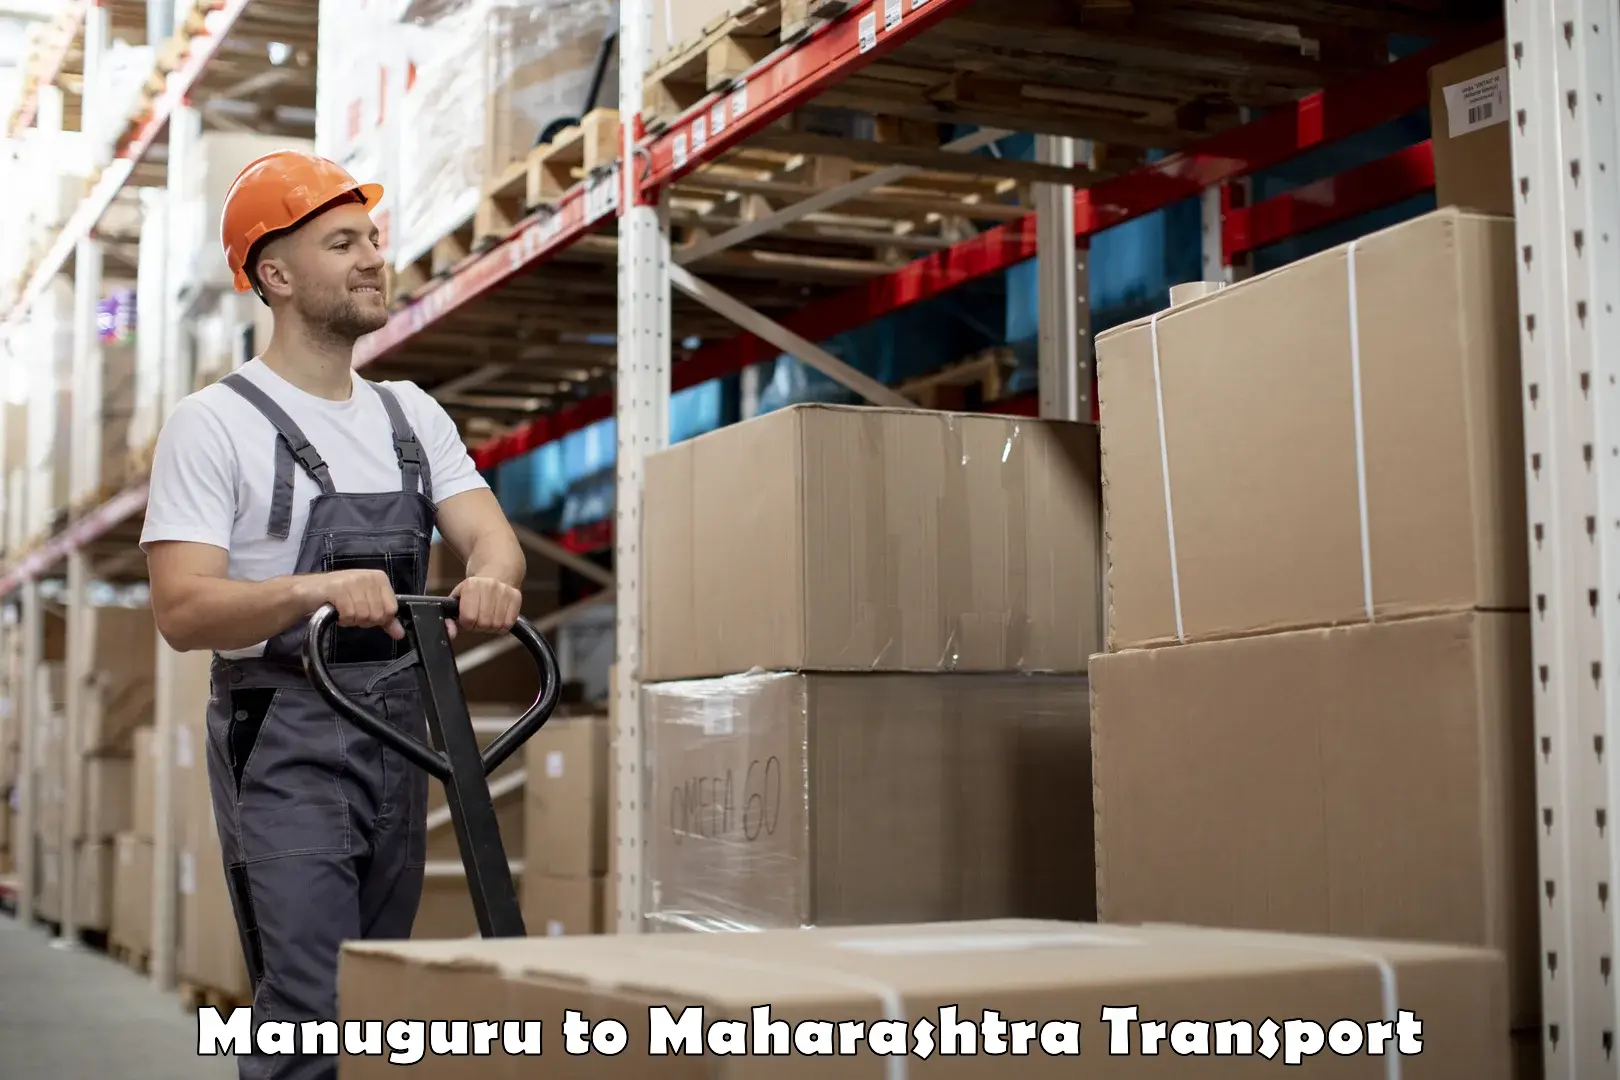 Truck transport companies in India Manuguru to Mehkar